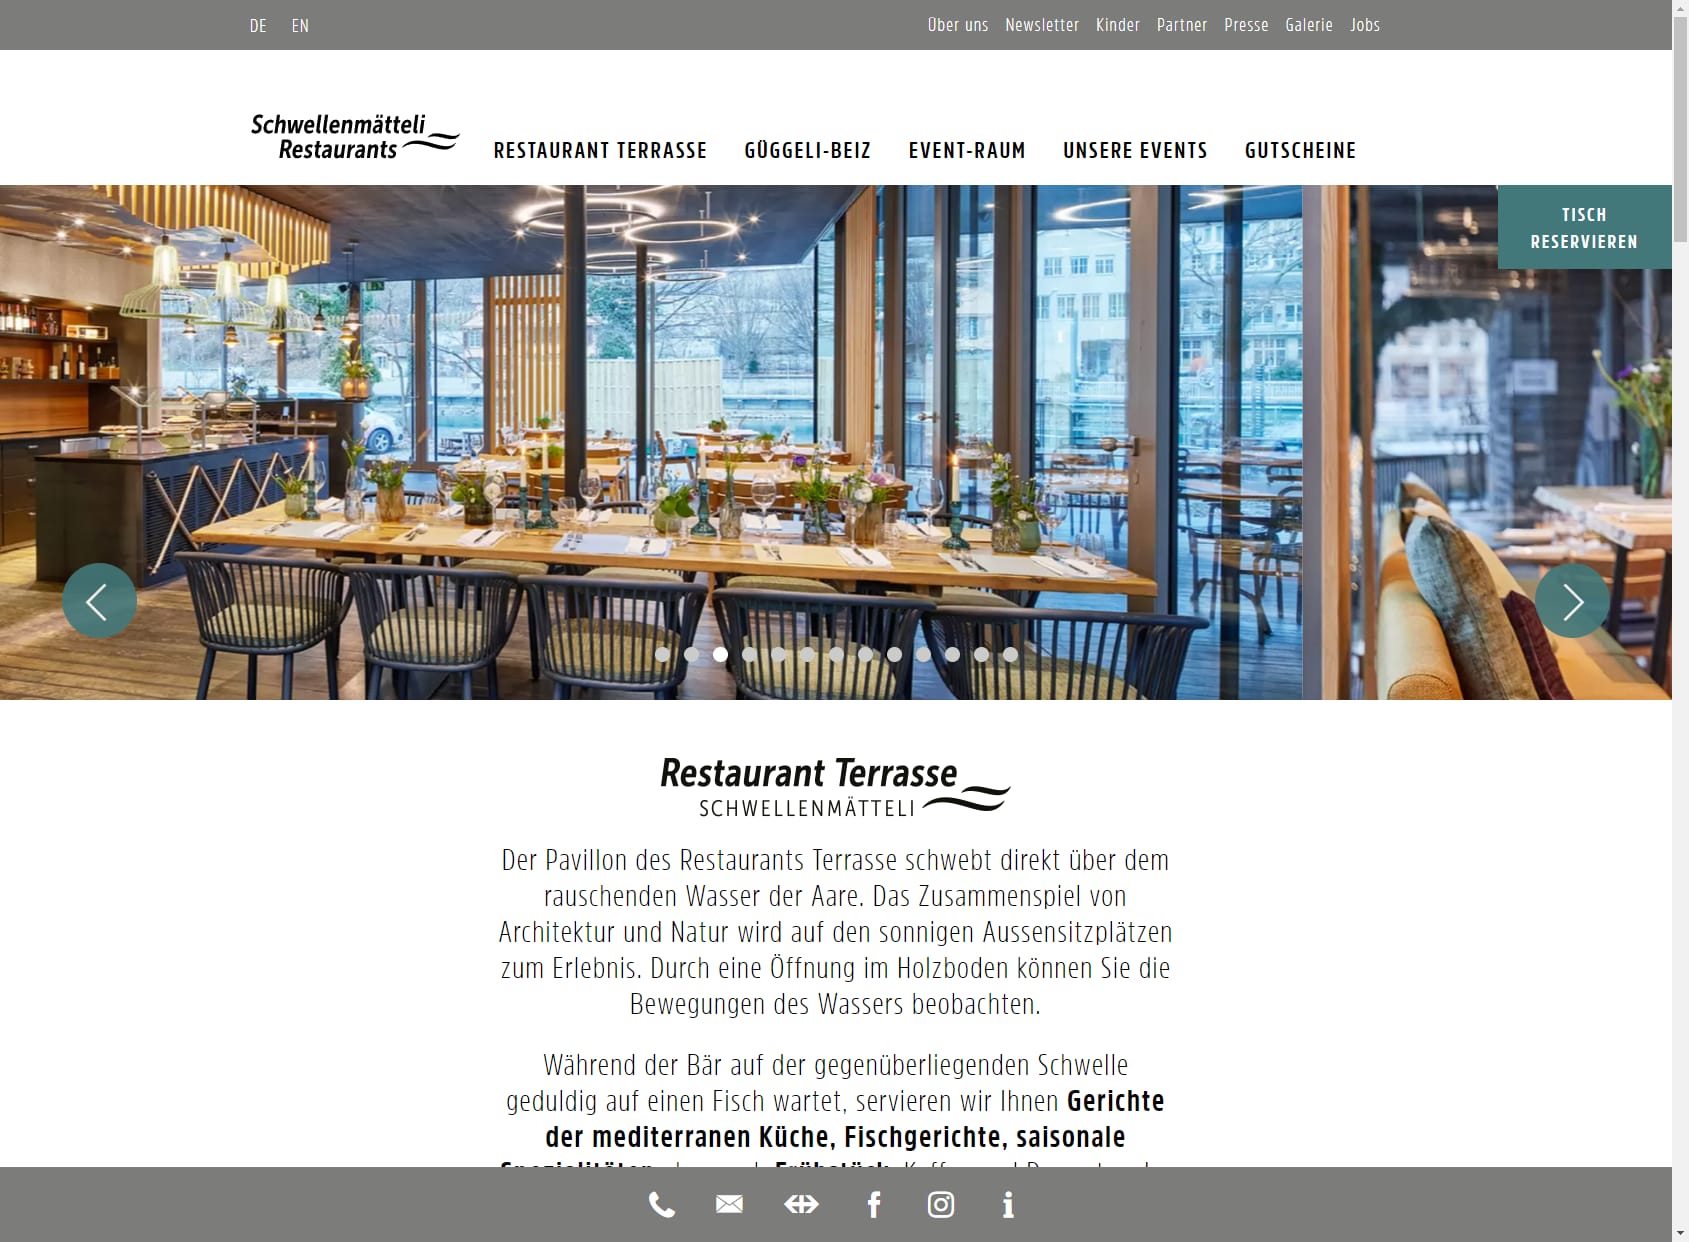 Restaurants Terrasse